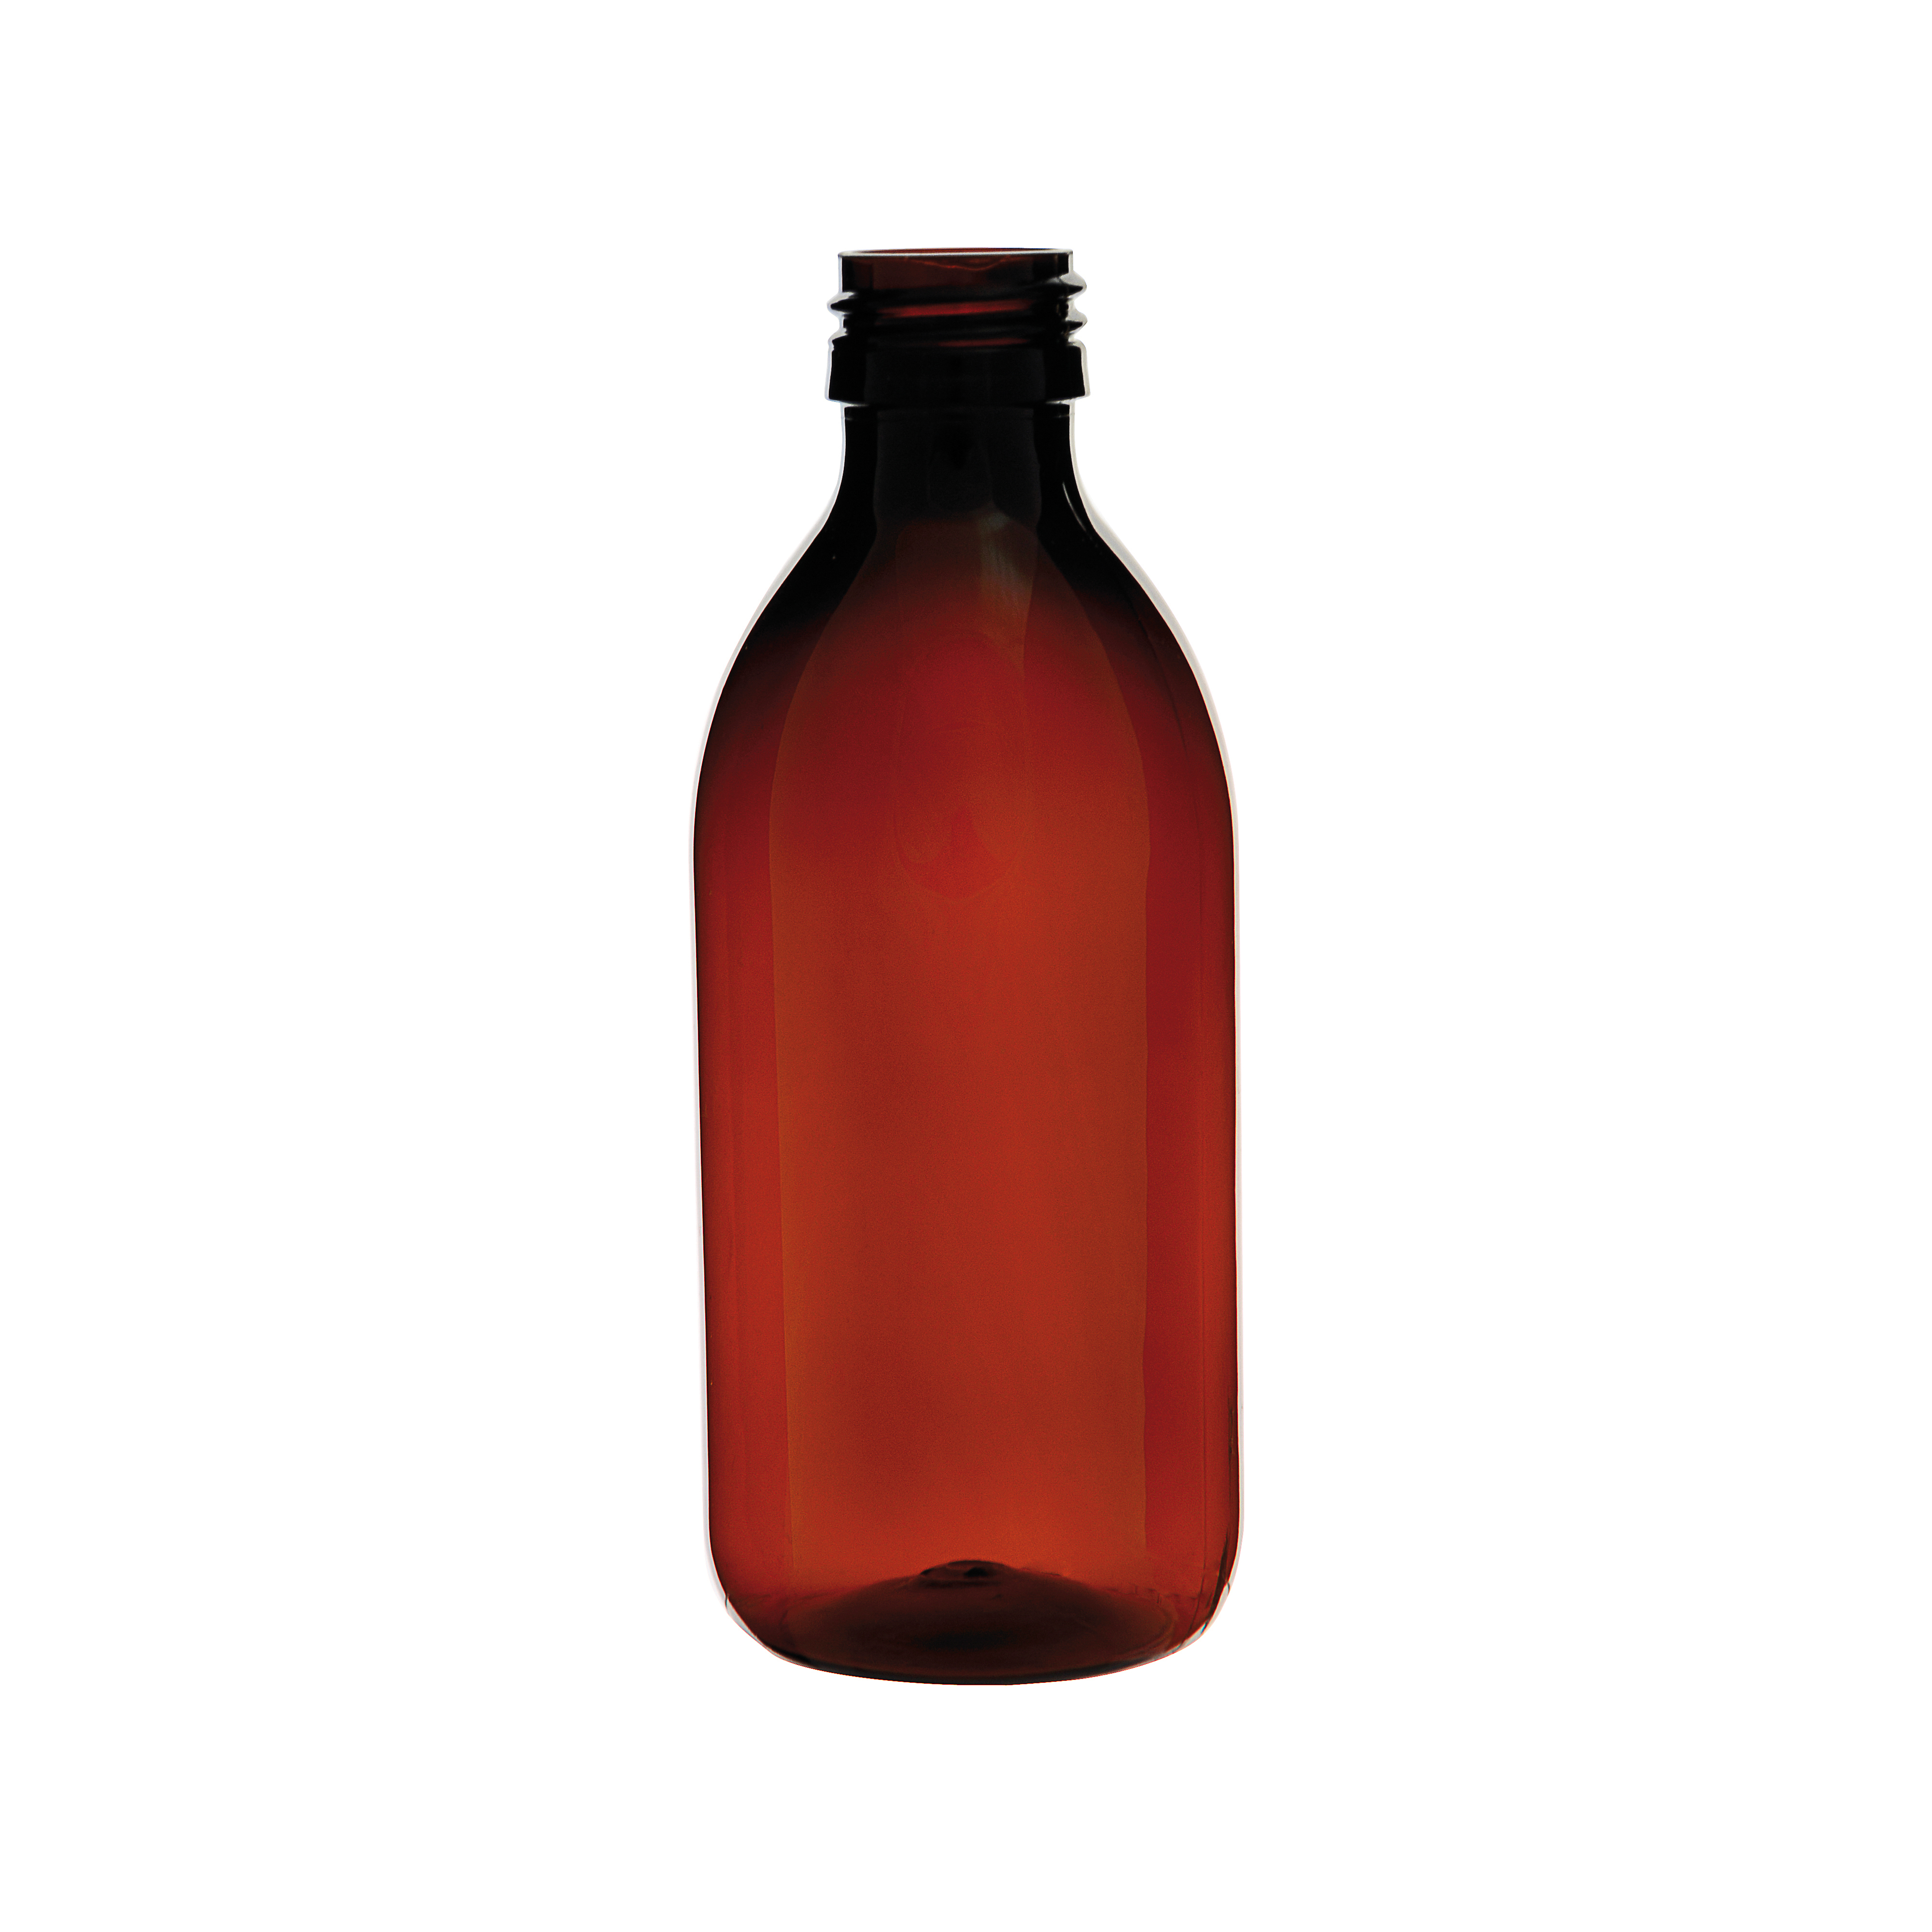 Стеклянные бутылки темная. ПЭТ бутылка 250 мл. 998659 Бутыль темная 100 мл с винтовой крышкой (28мм. ПЭТ флаконы 60 мл. Темные стеклянные бутылки.